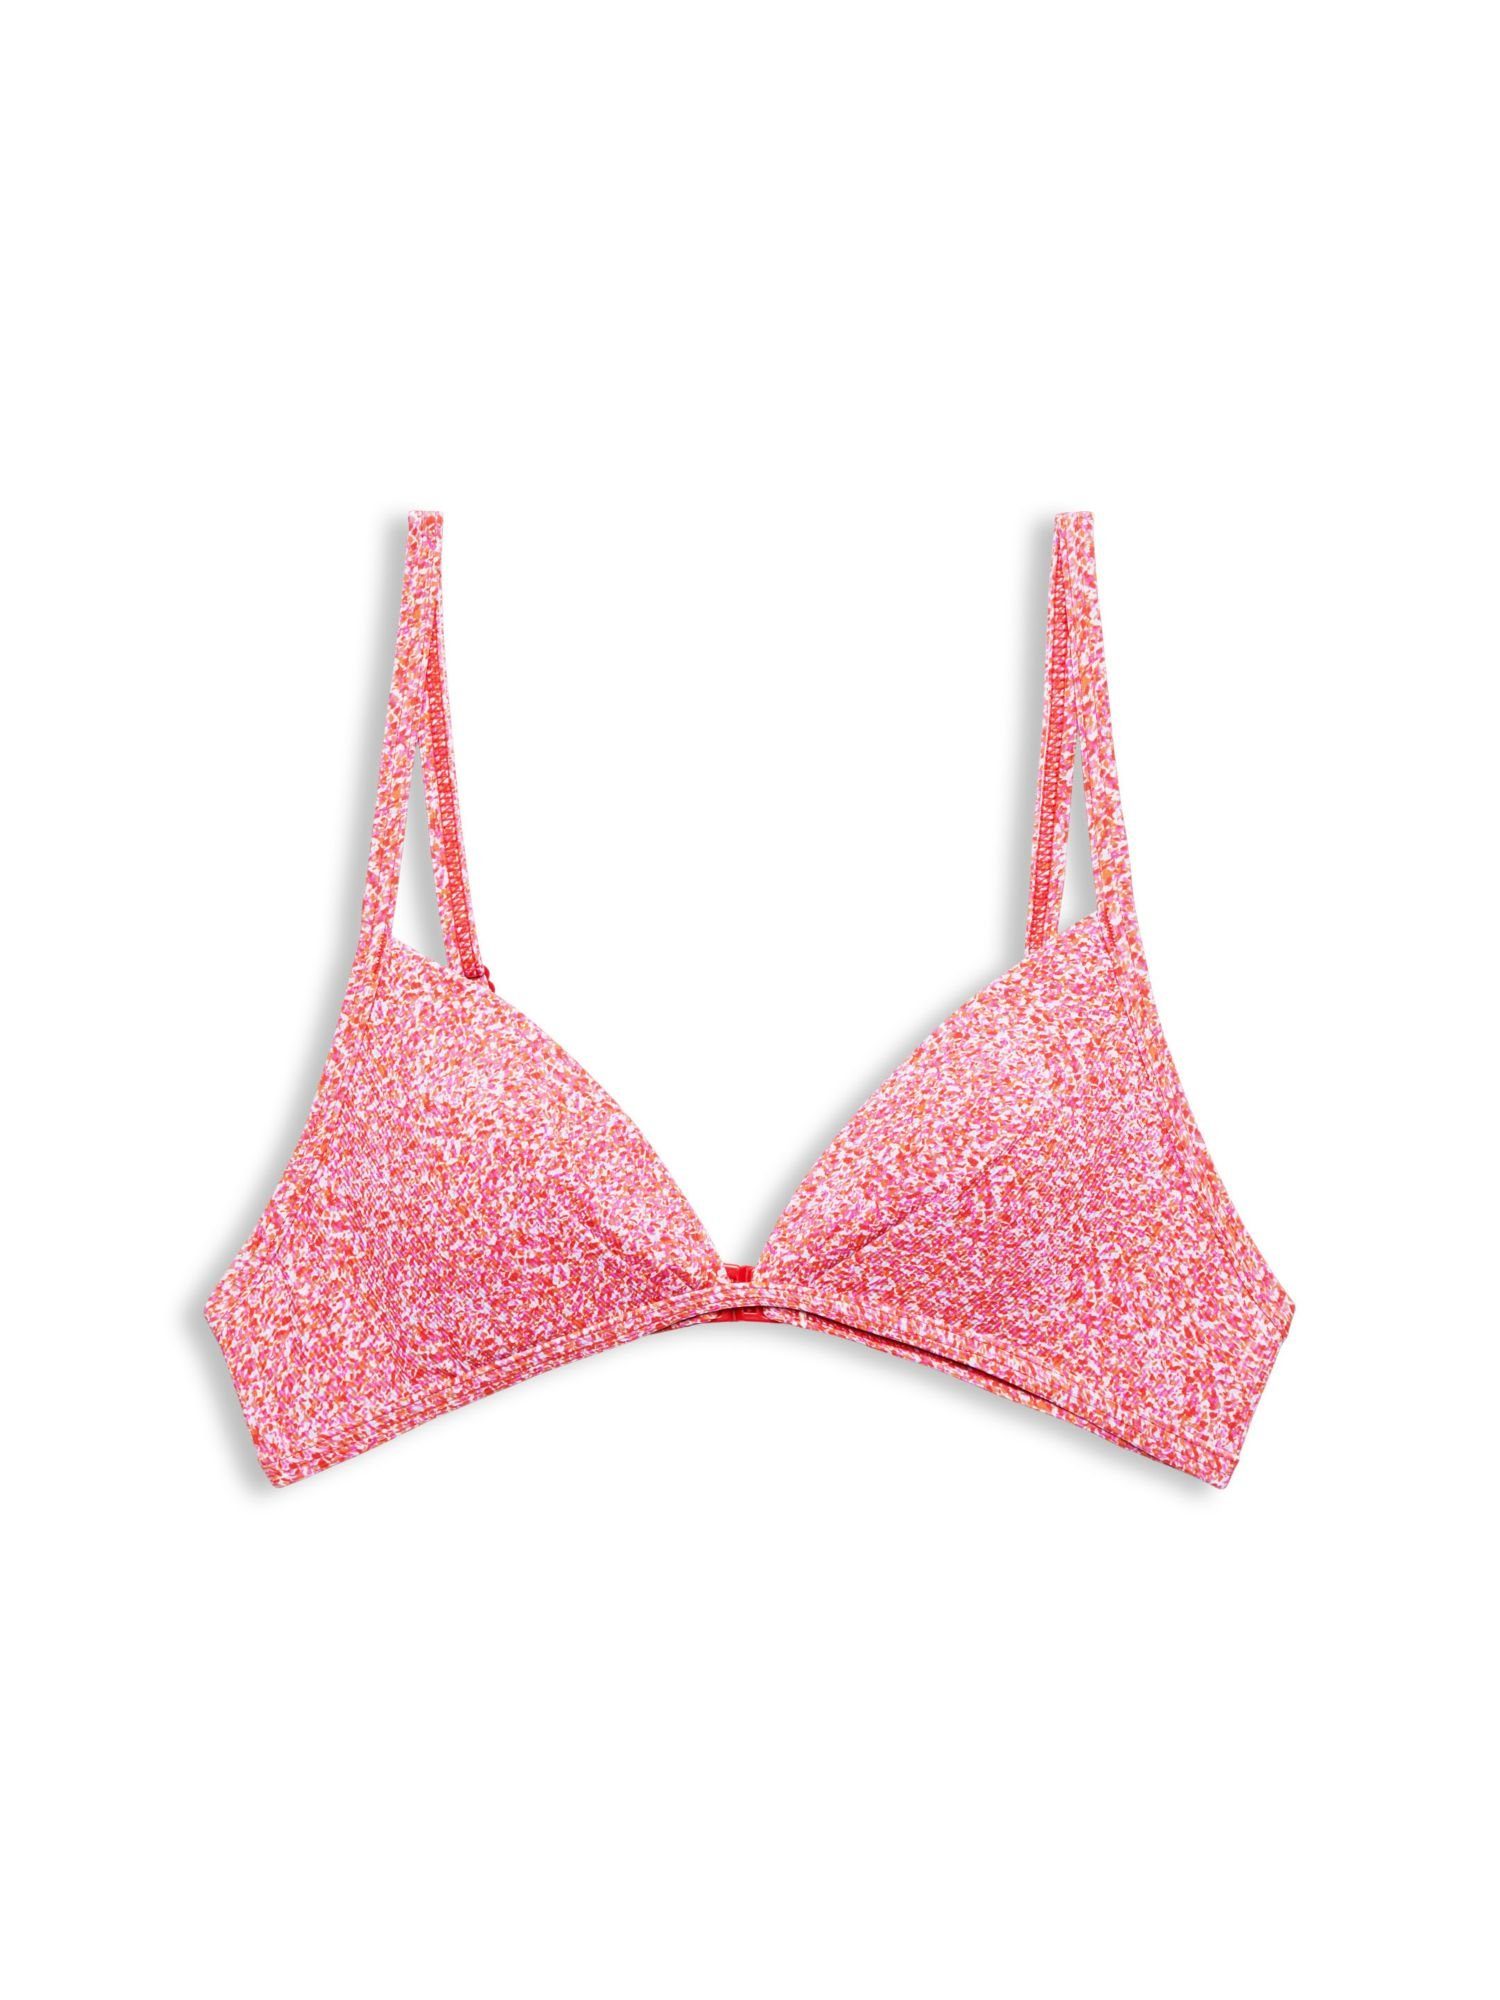 Esprit Triangel-Bikini-Top Wattiertes Bikinitop mit Print